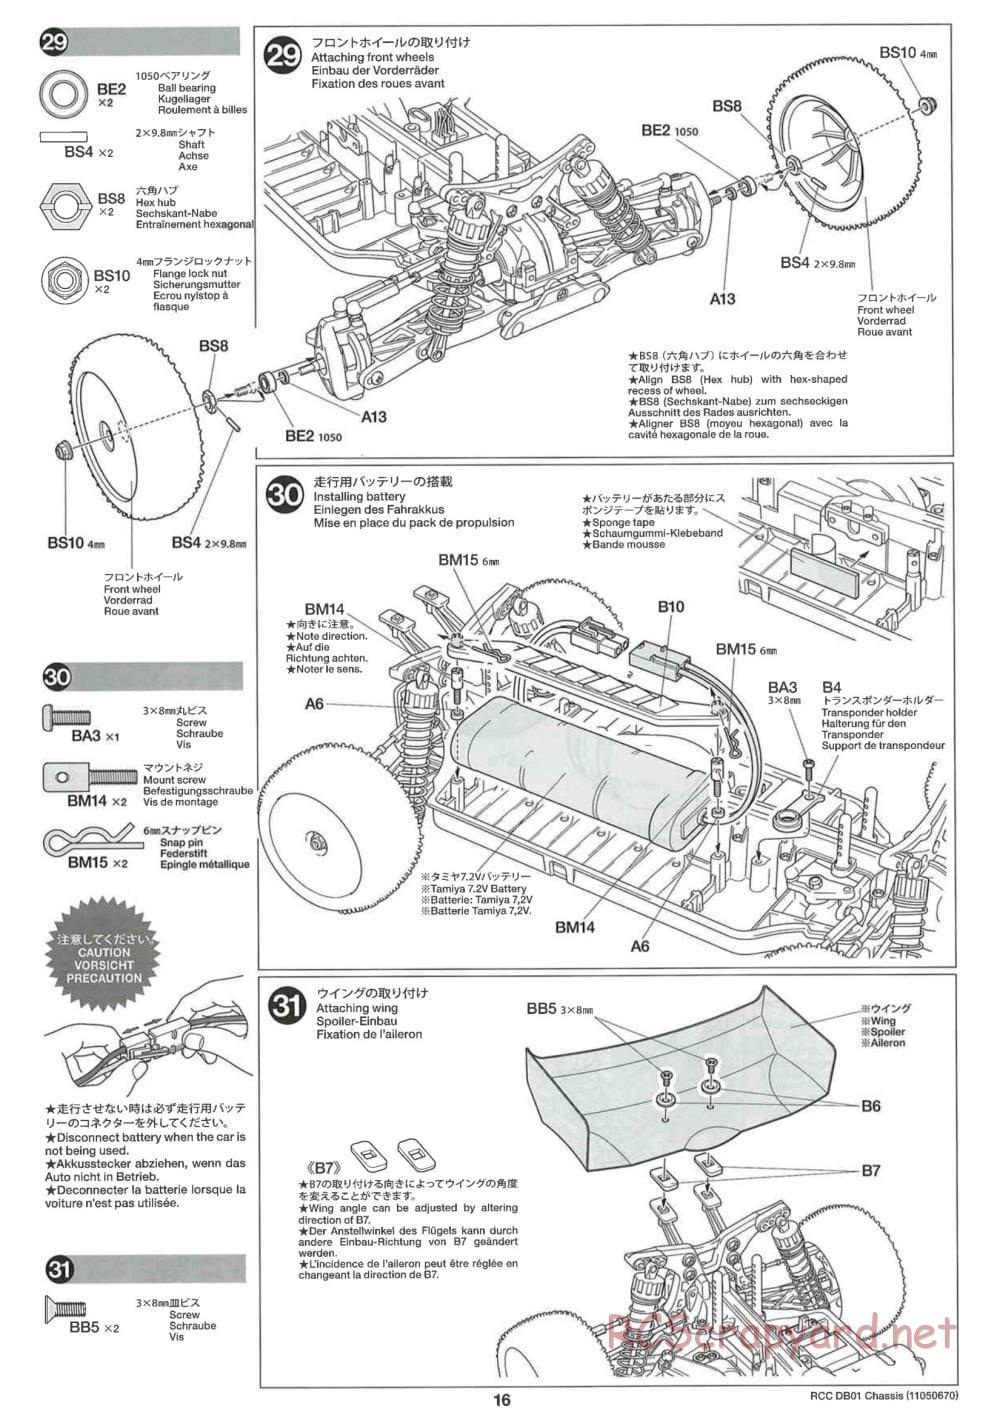 Tamiya - DB-01 Chassis - Manual - Page 16